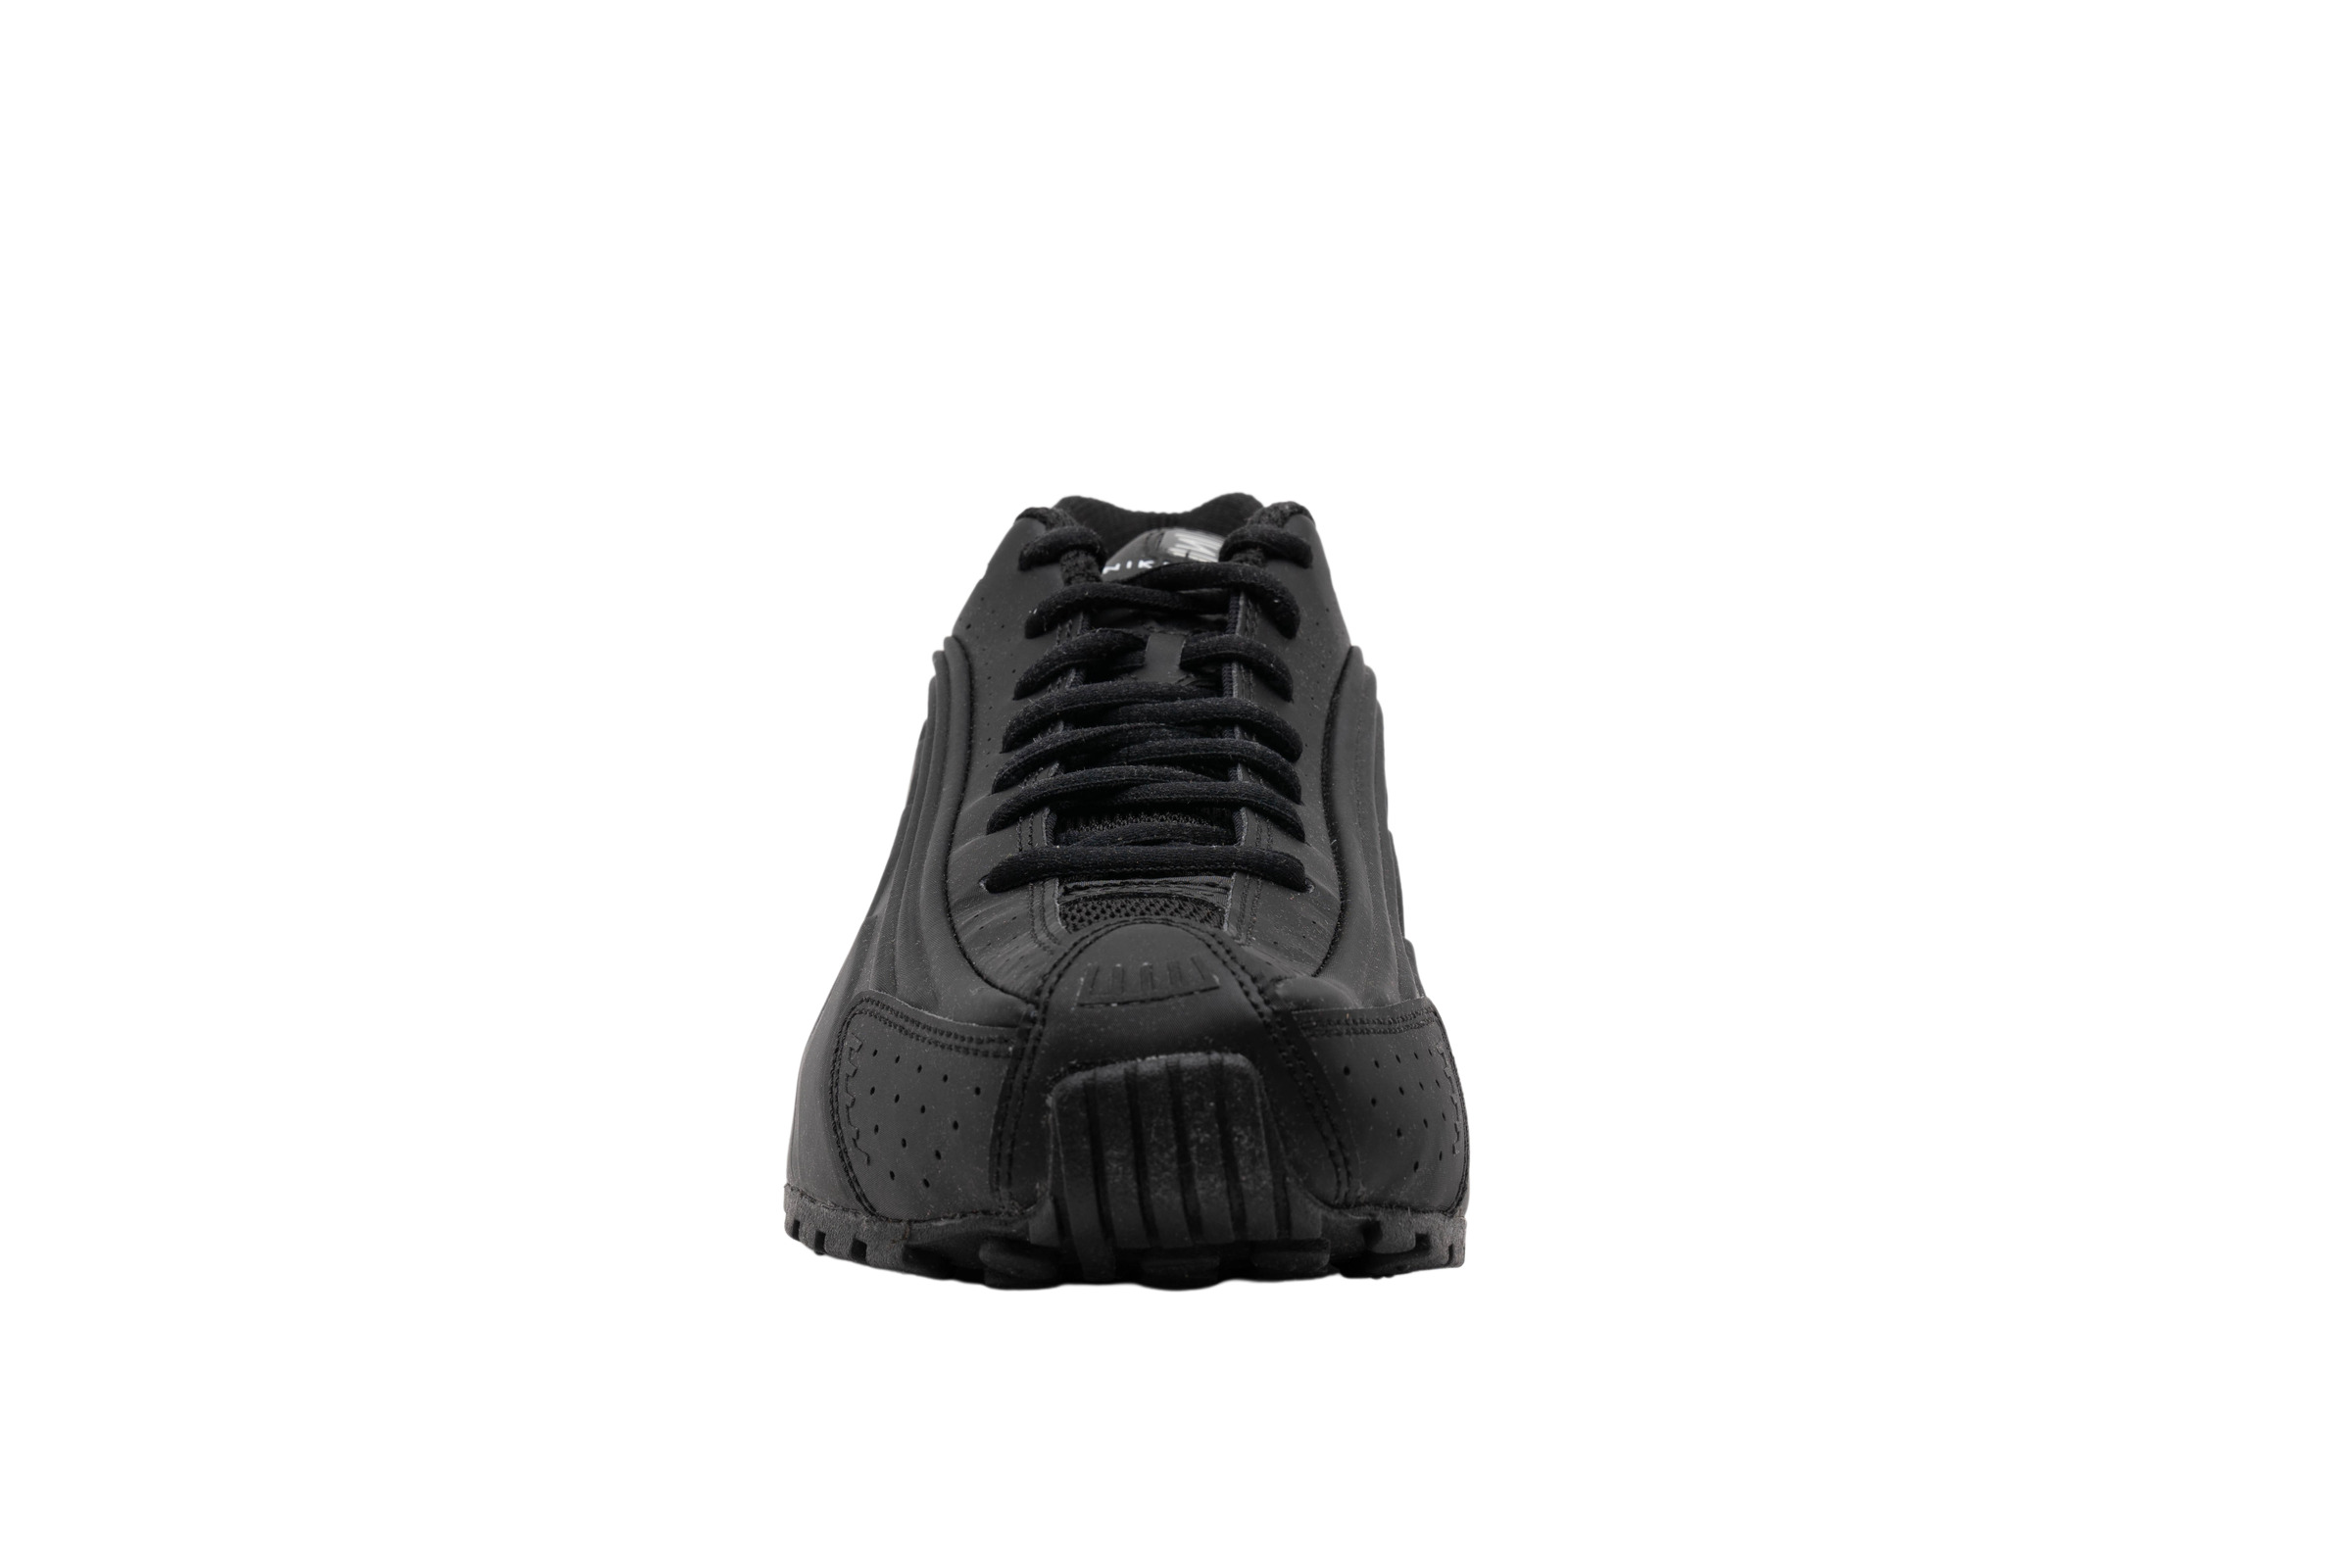 Nike Shox R4 Triple Black 2019 - 104265-044